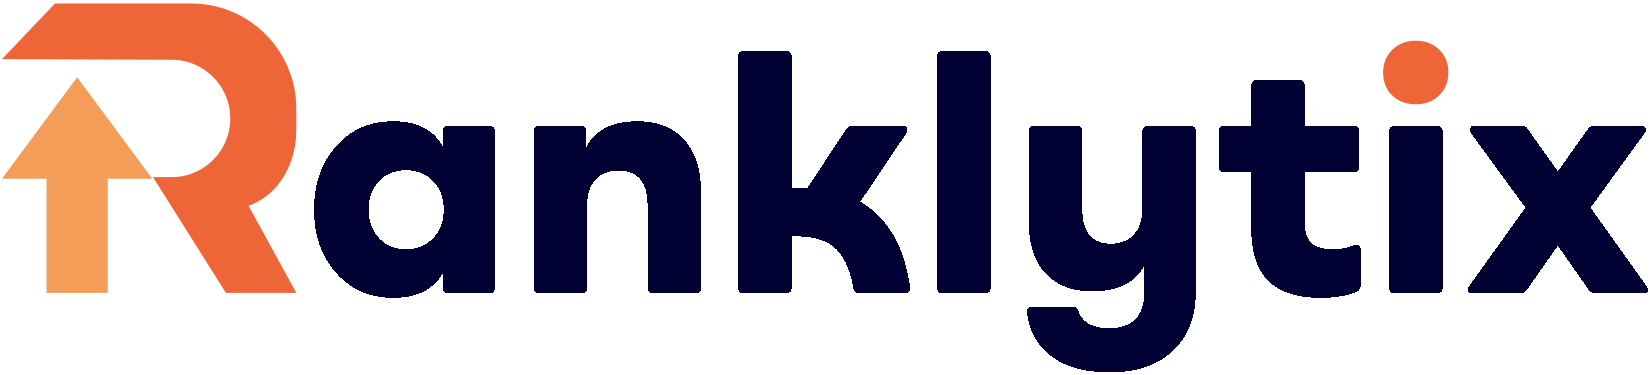 ranklytix logo